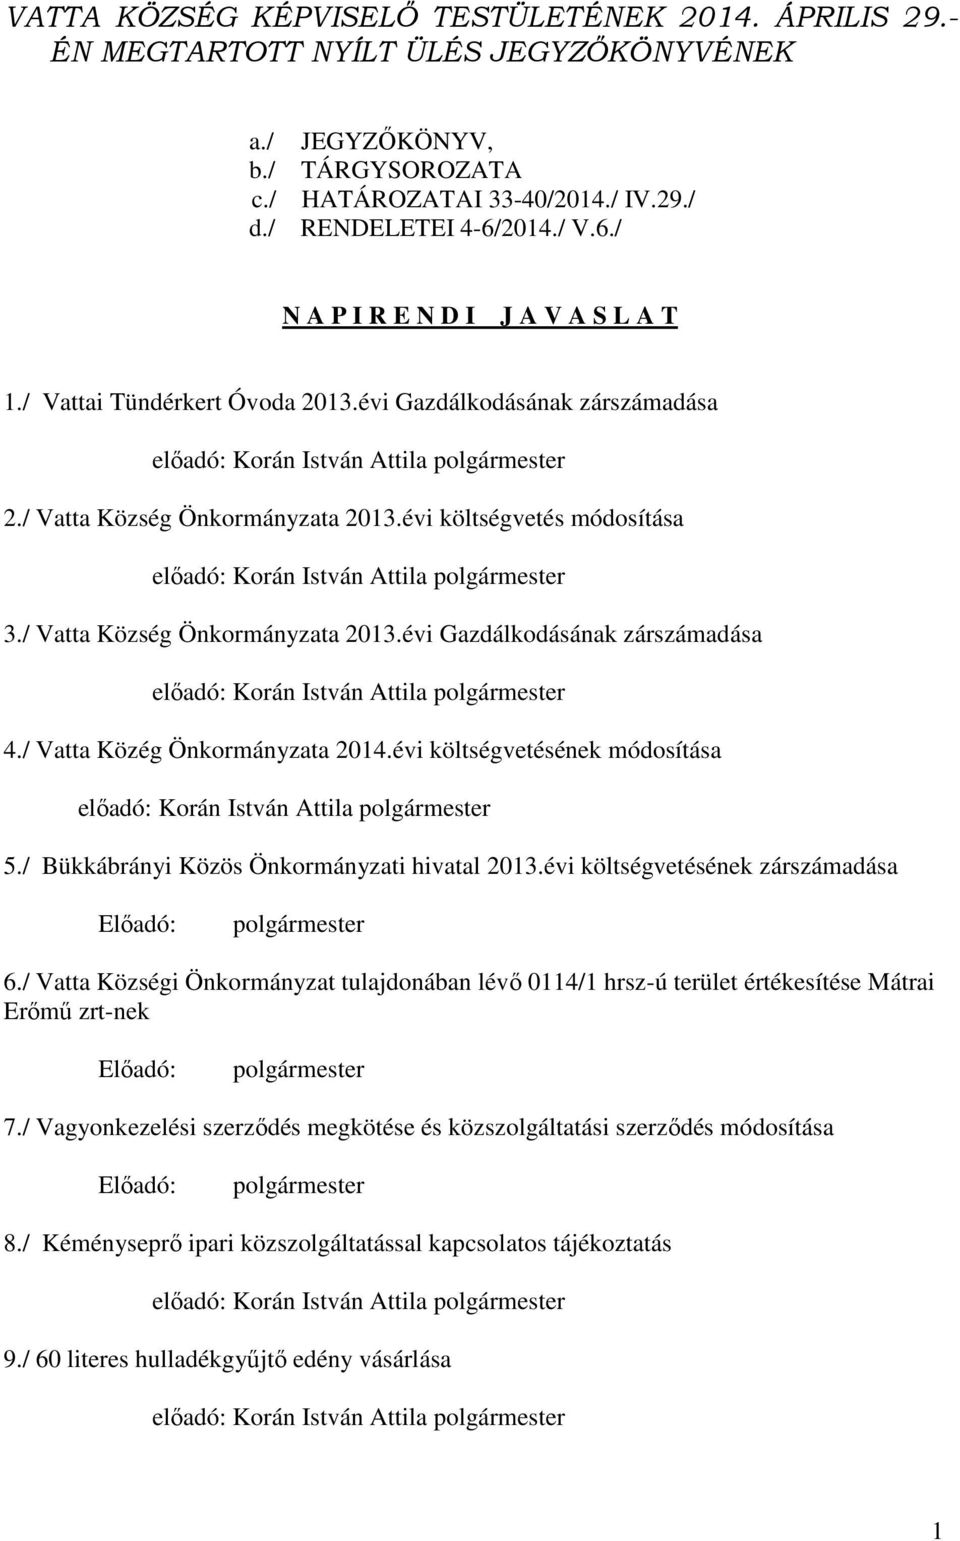 / Vatta Község Önkormányzata 2013.évi Gazdálkodásának zárszámadása 4./ Vatta Közég Önkormányzata 2014.évi költségvetésének módosítása 5./ Bükkábrányi Közös Önkormányzati hivatal 2013.